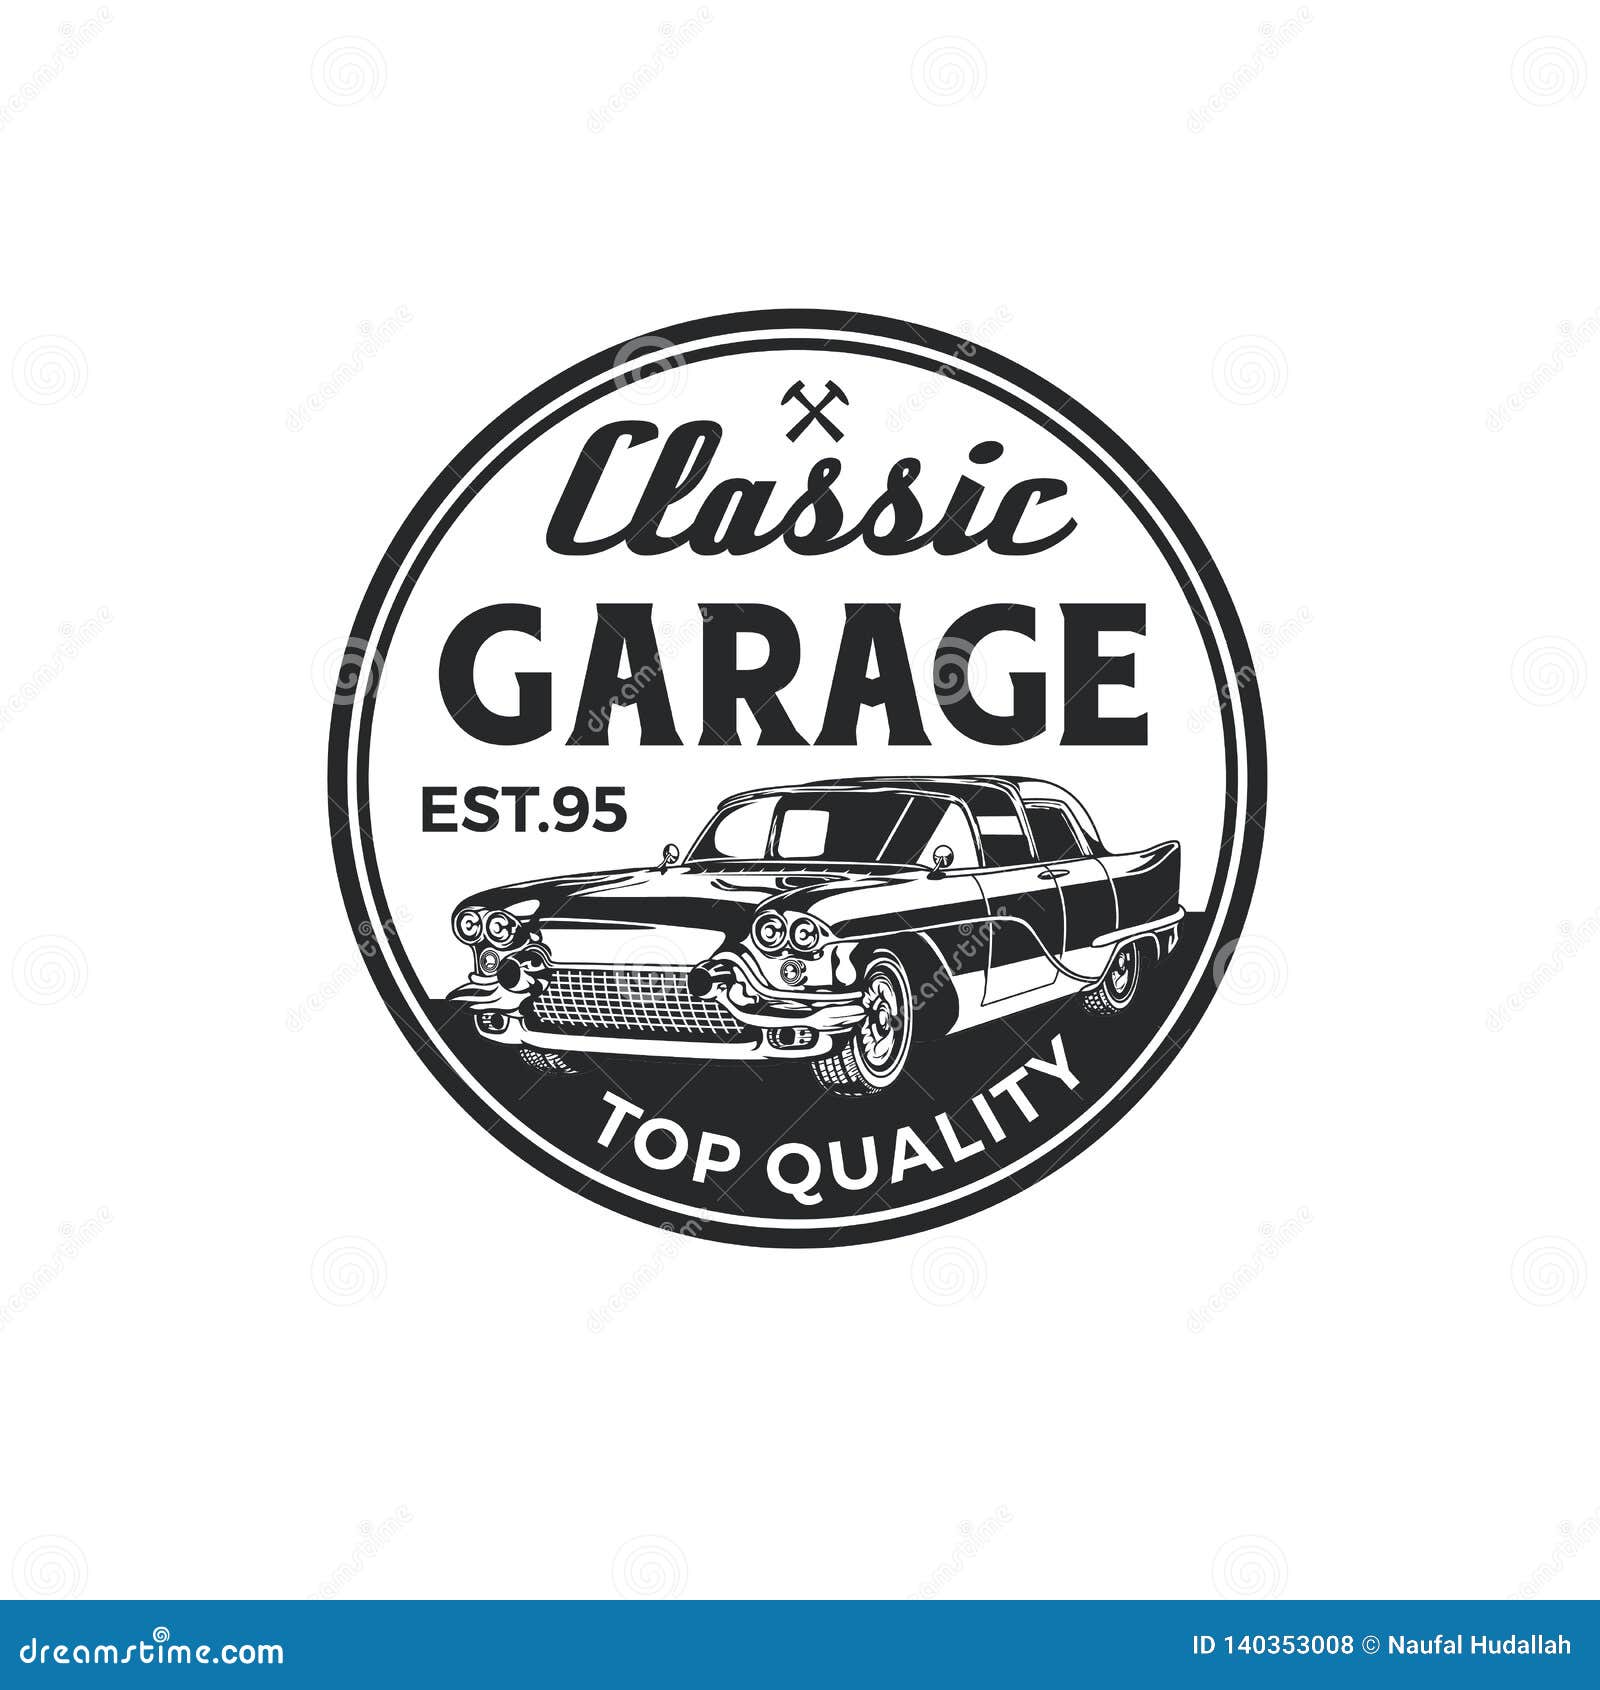 Vintage Garage Logos